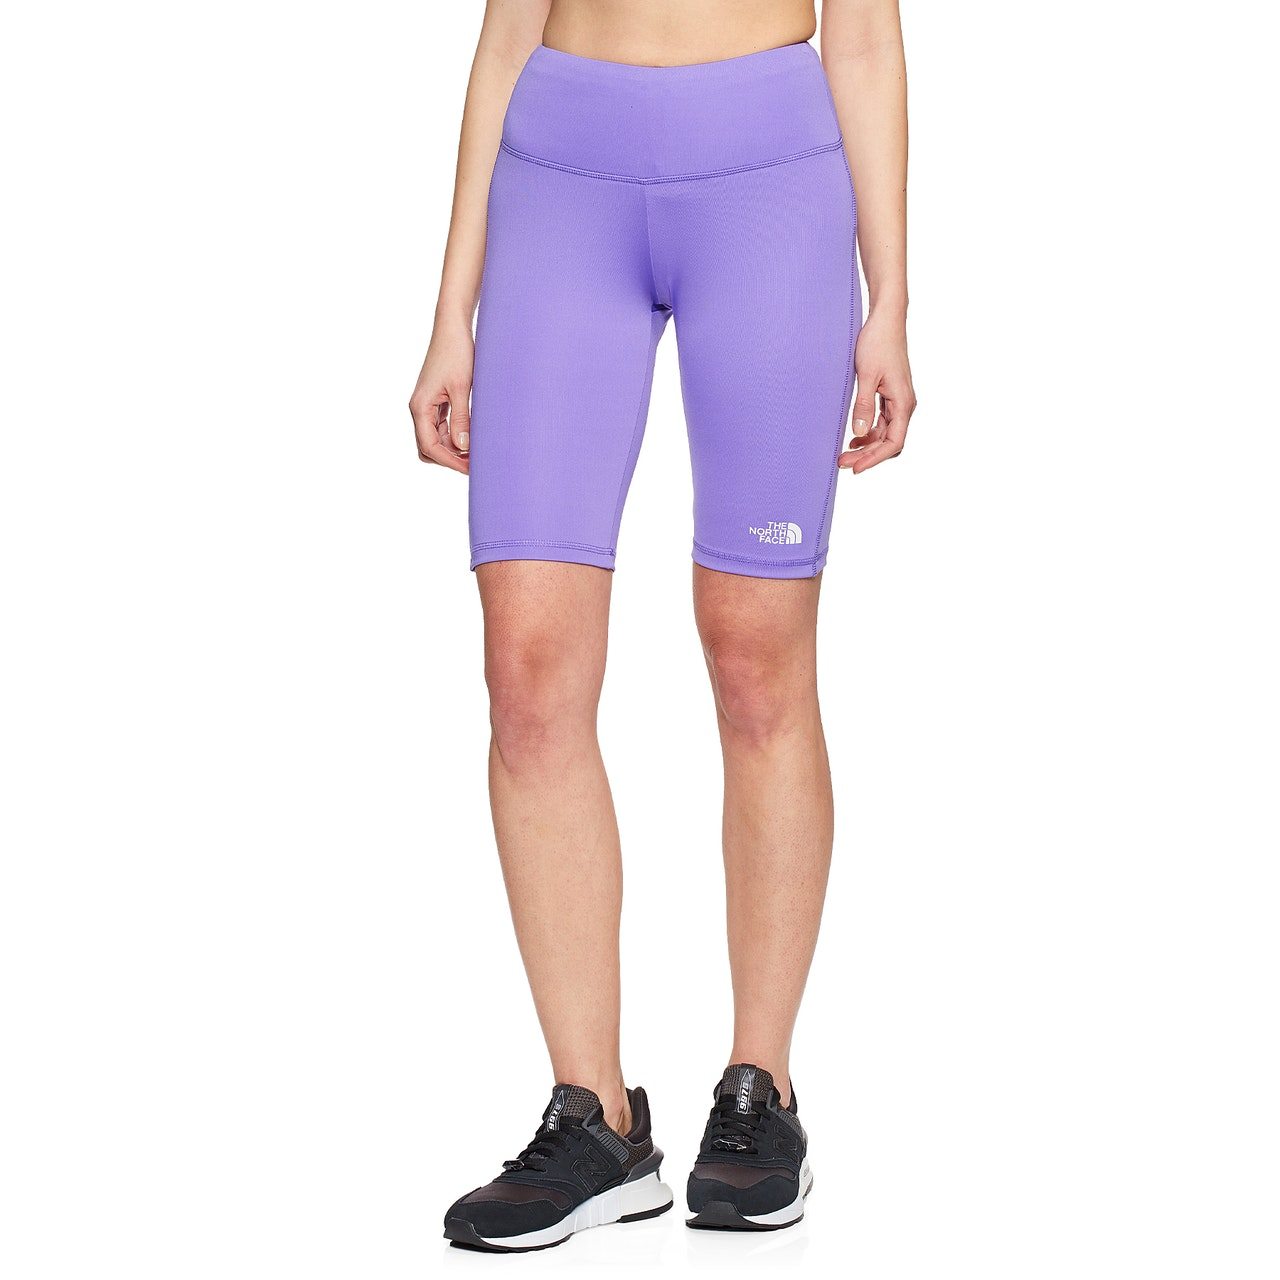 North Face Flex Short Tight Womens Running Shorts - Pop Purple